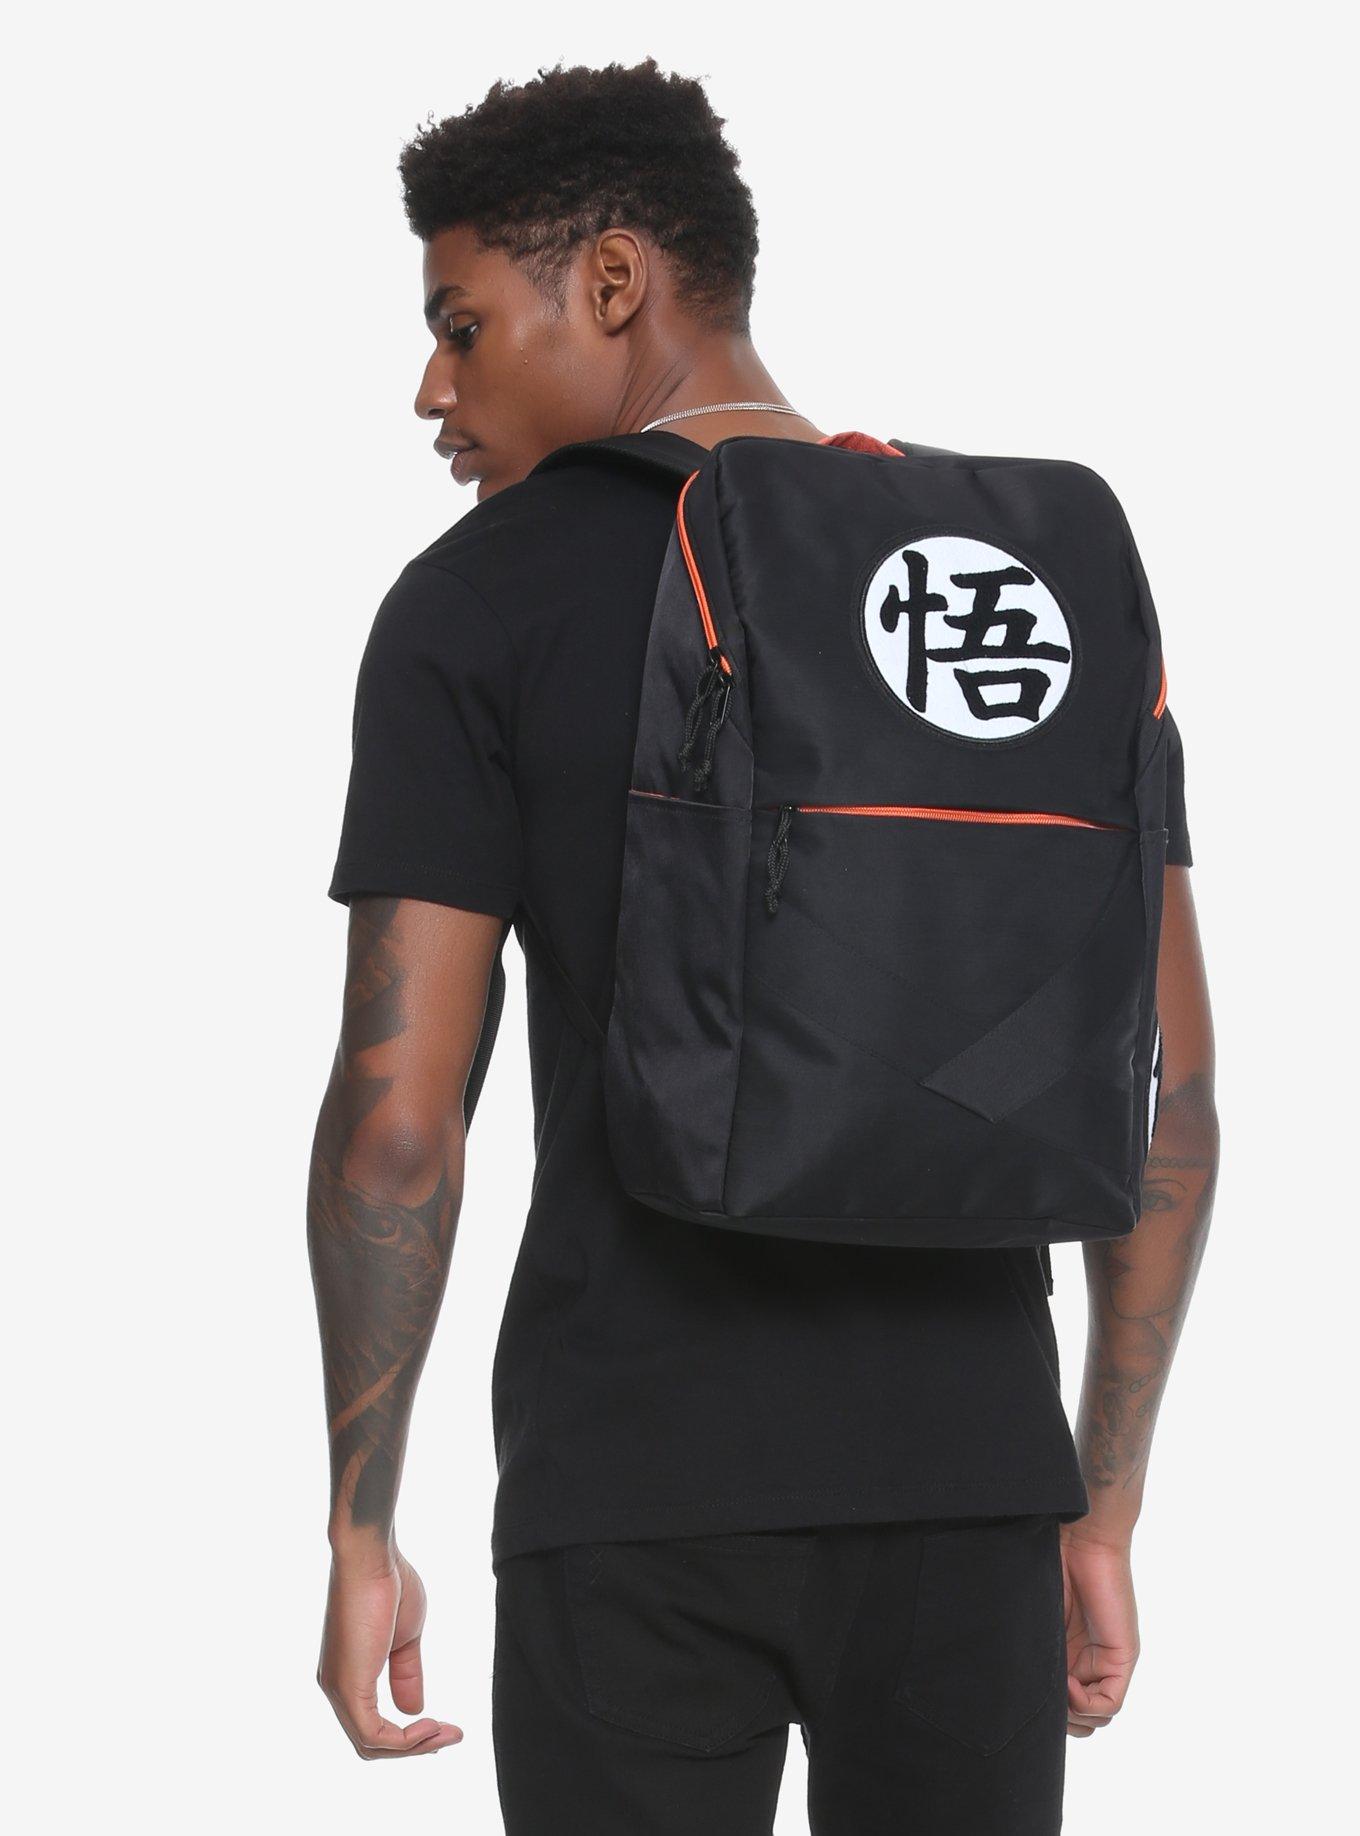 Dragonball Z Shoulder Bag SCHOOL BACKPACK Goku Orange Canvas GIFT